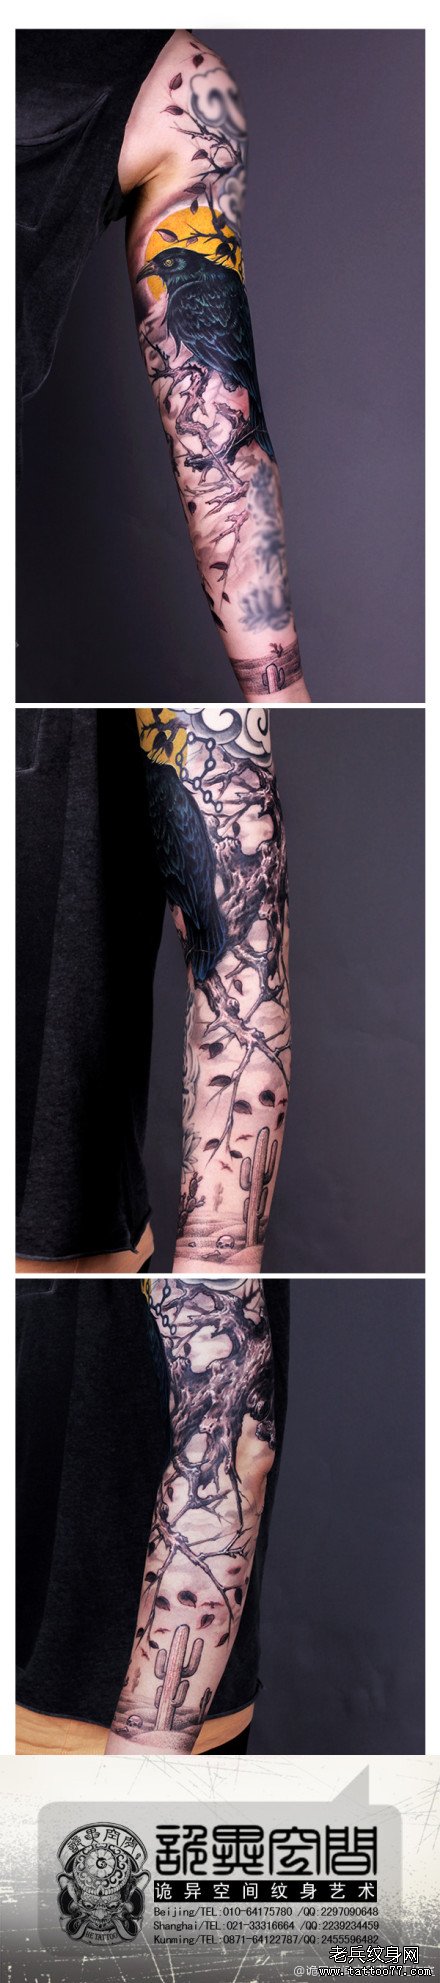 一款帅气经典的花臂乌鸦纹身图案